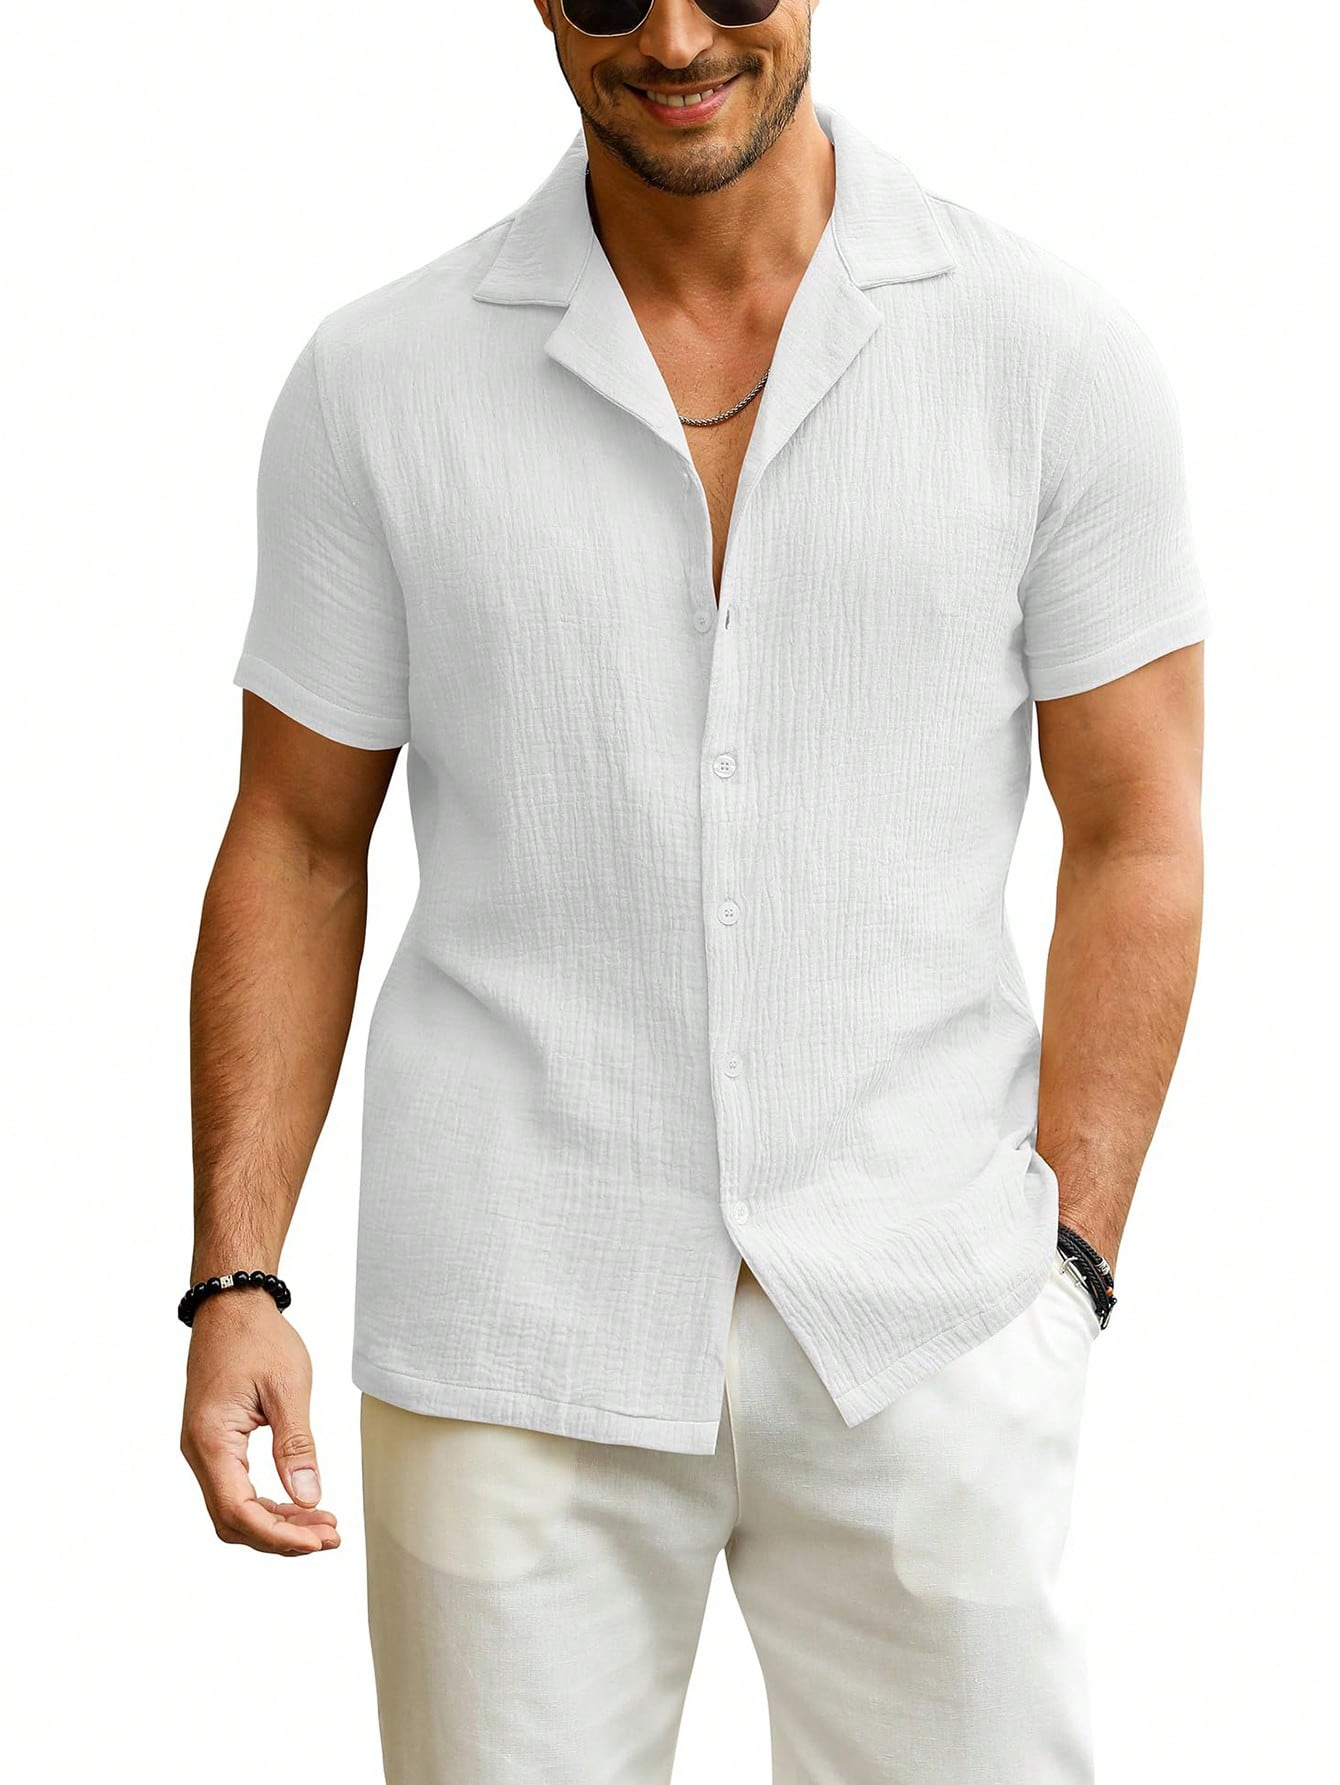 Мужская рубашка с коротким рукавом на пуговицах и воротником для летнего пляжа, белый мужская поглощающая рубашка с коротким рукавом и отложным воротником на пуговицах